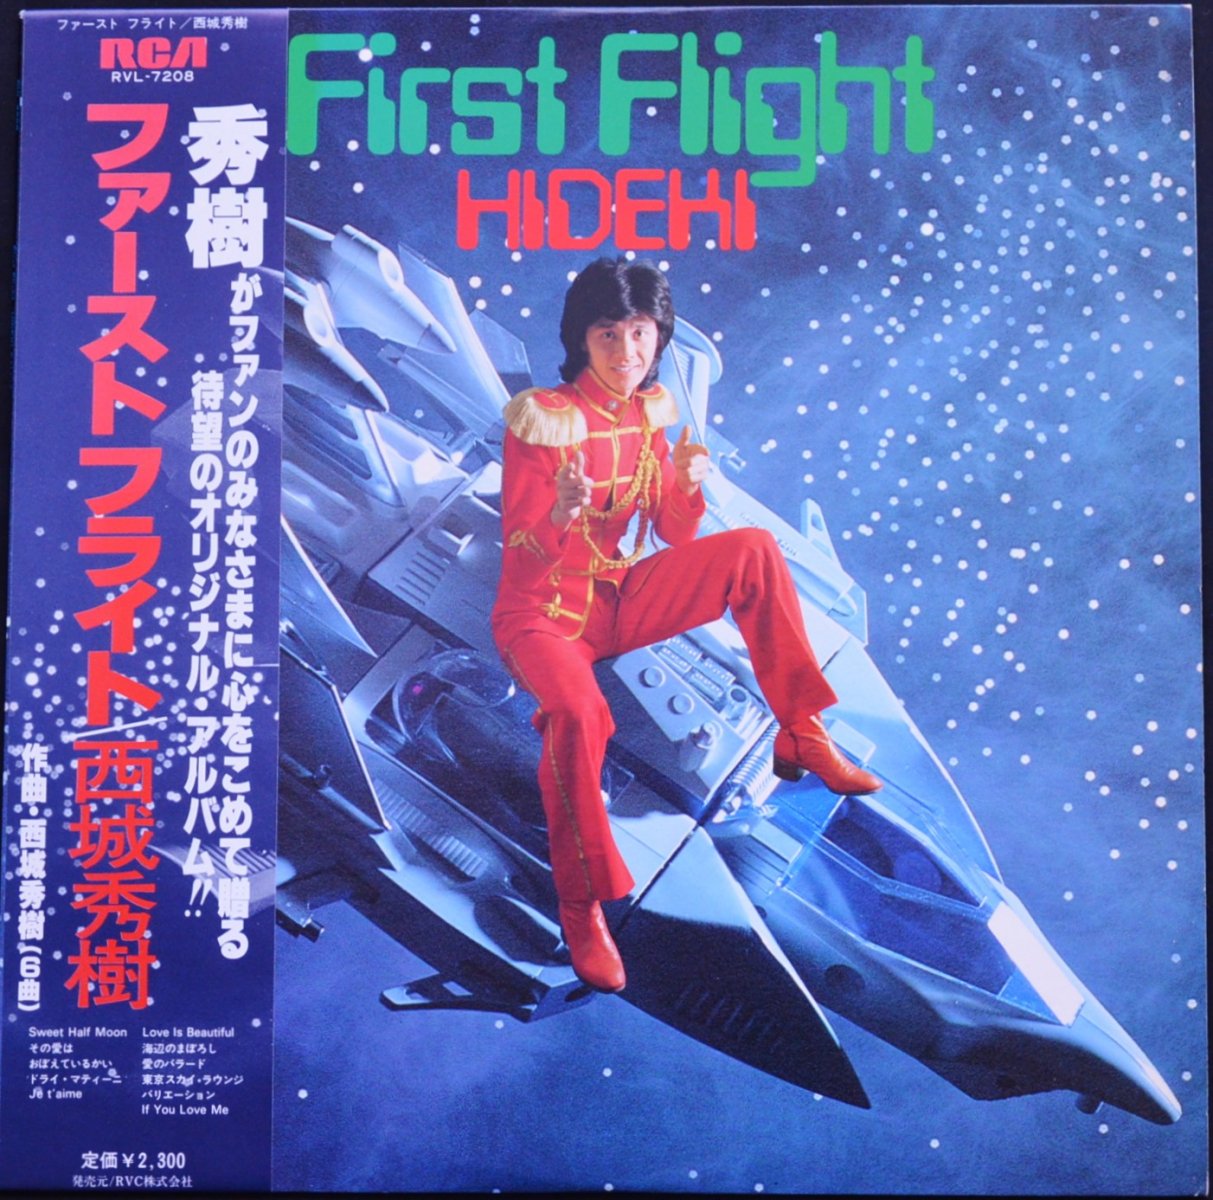 西城秀樹 Hideki Saijo ファーストフライト First Flight Lp Hip Tank Records